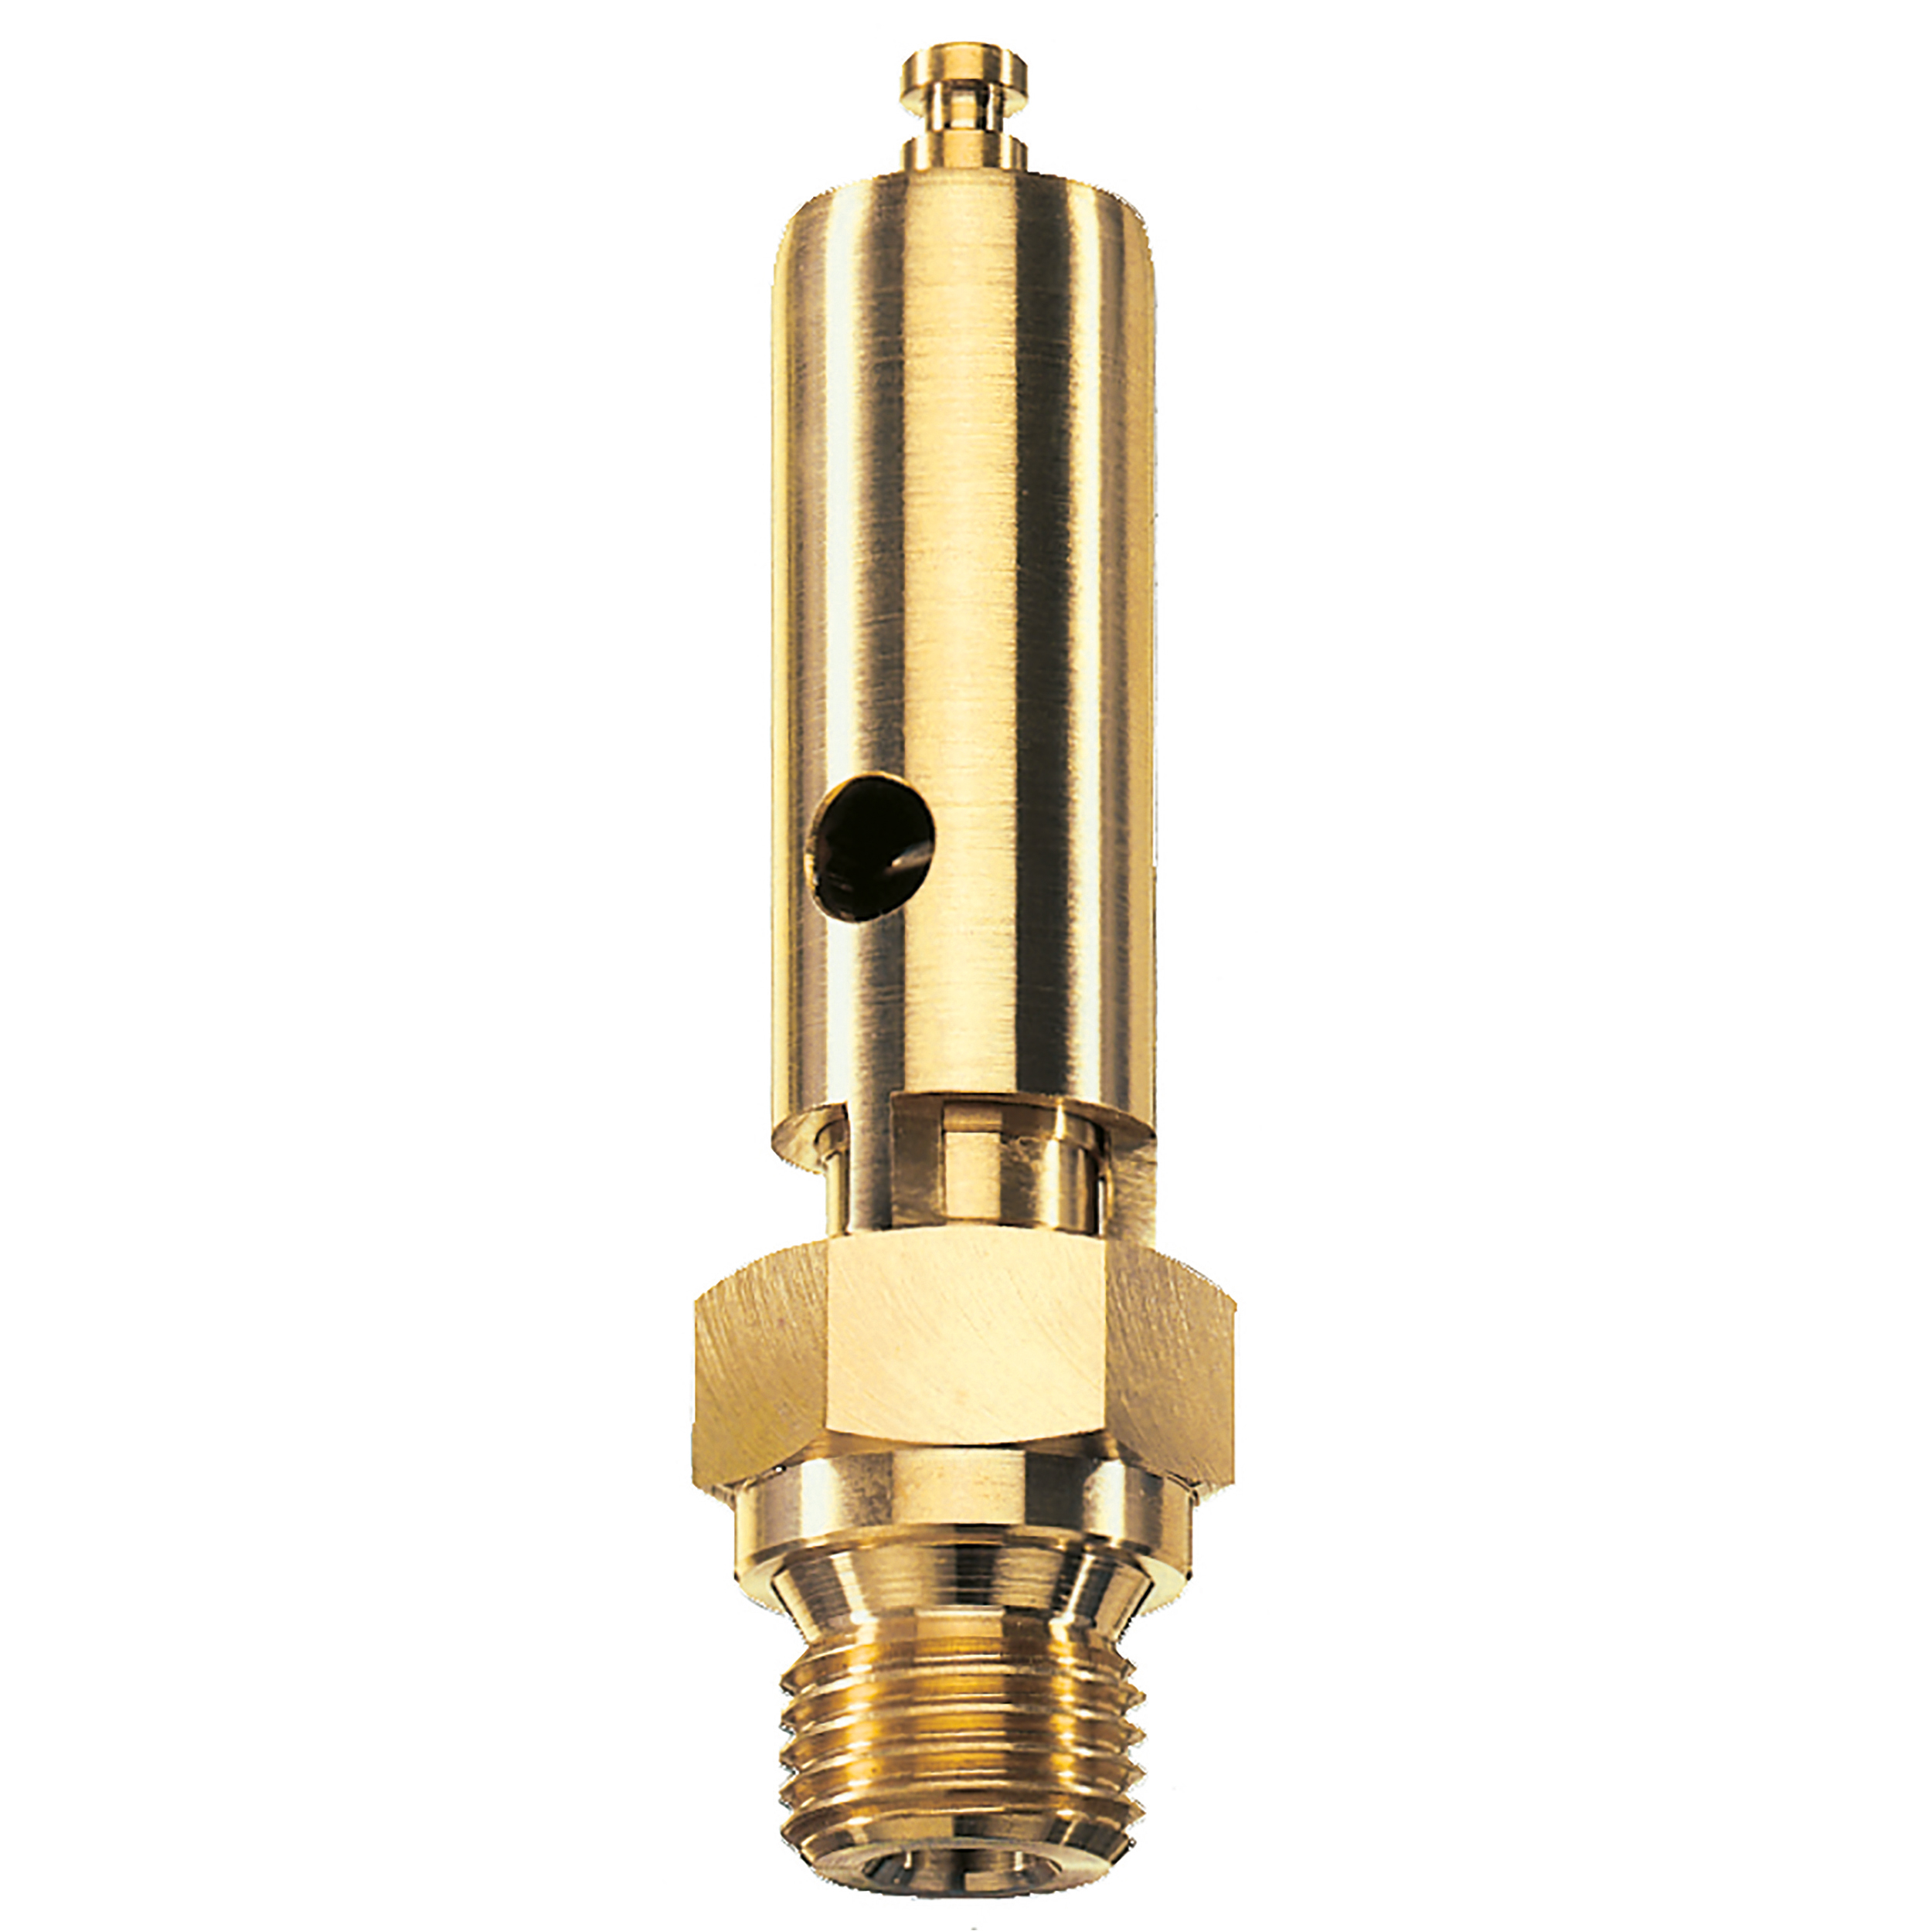 Savety valve component tested DN 6, G¼, L: 60 mm, seal: FKM, set pressure: 5.6 bar (81,2 psi), TÜV approval